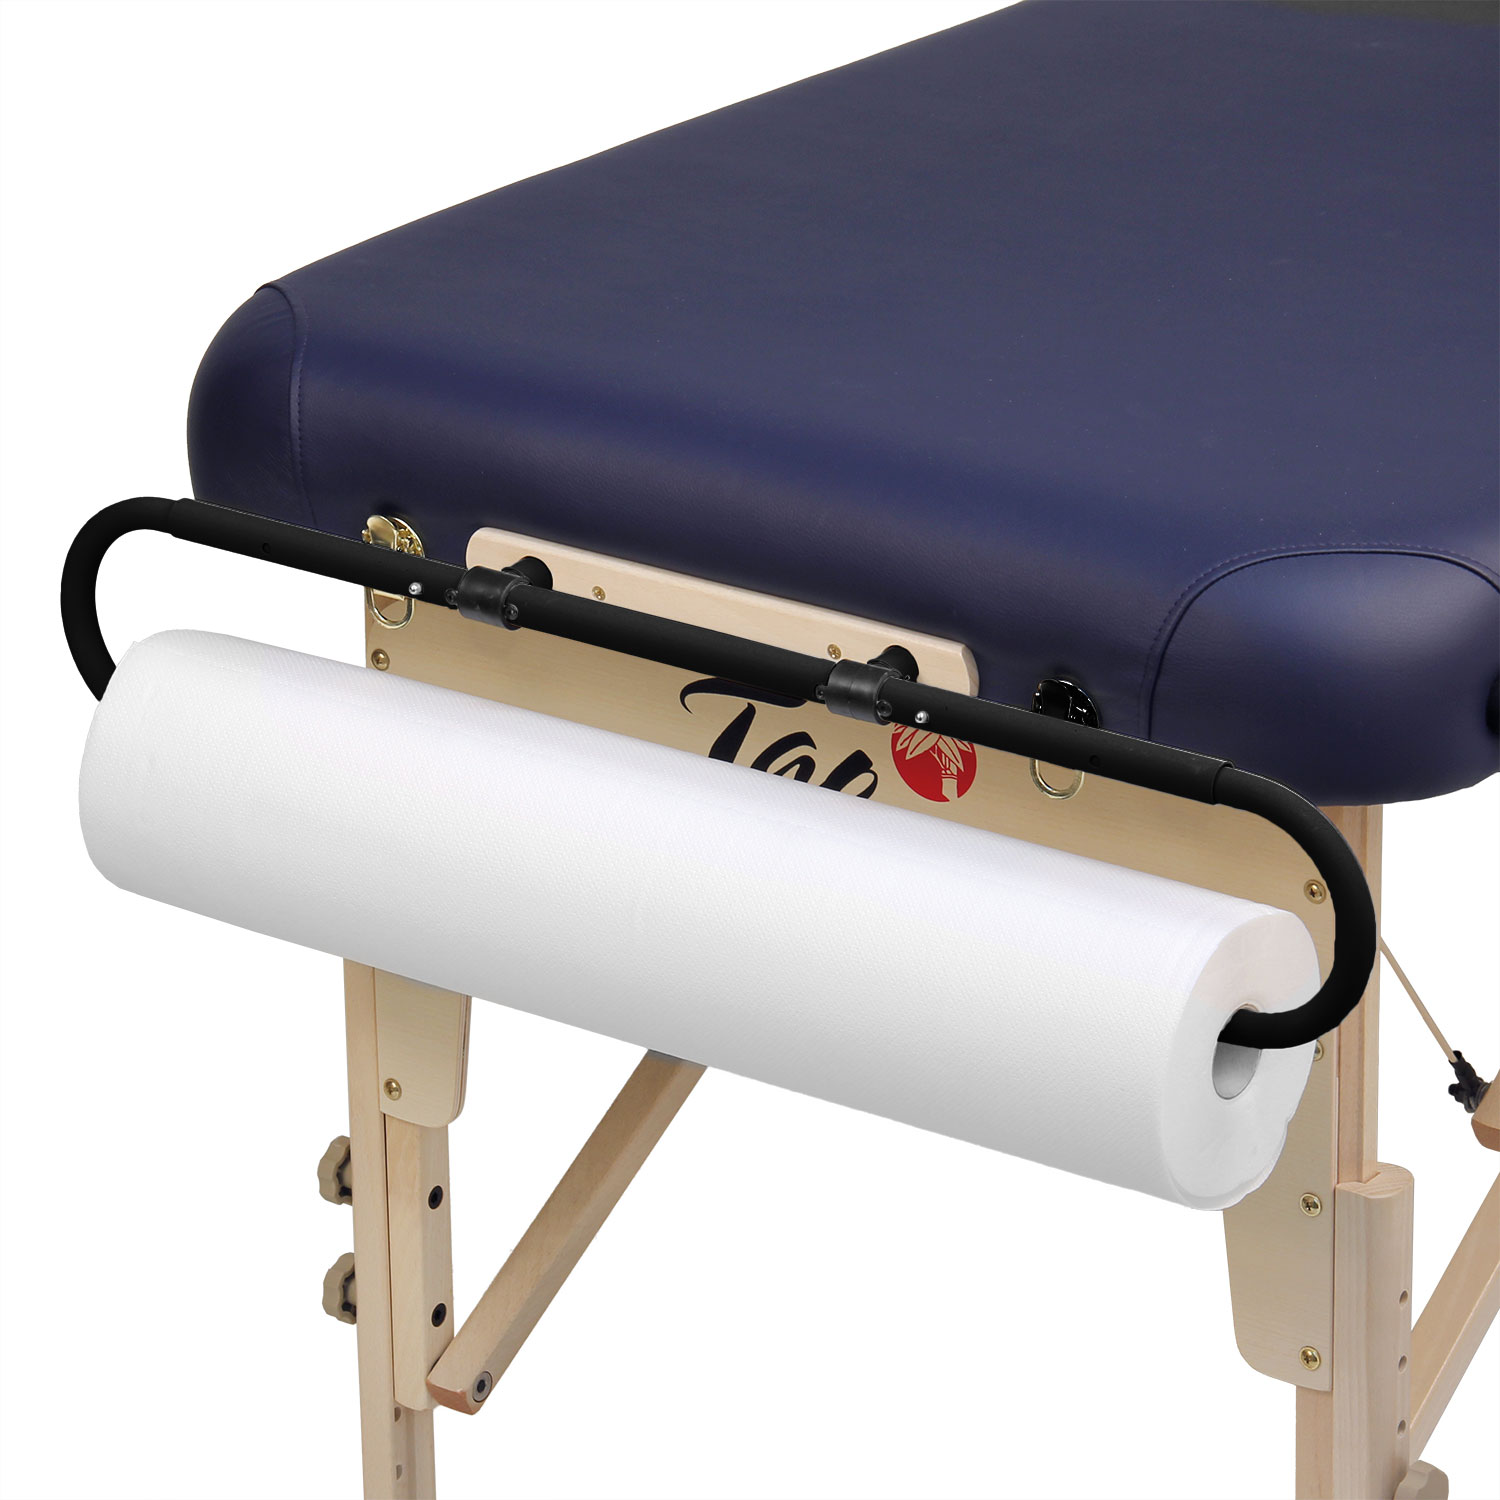 Rouleau de papier hygiénique jetable pour table massage